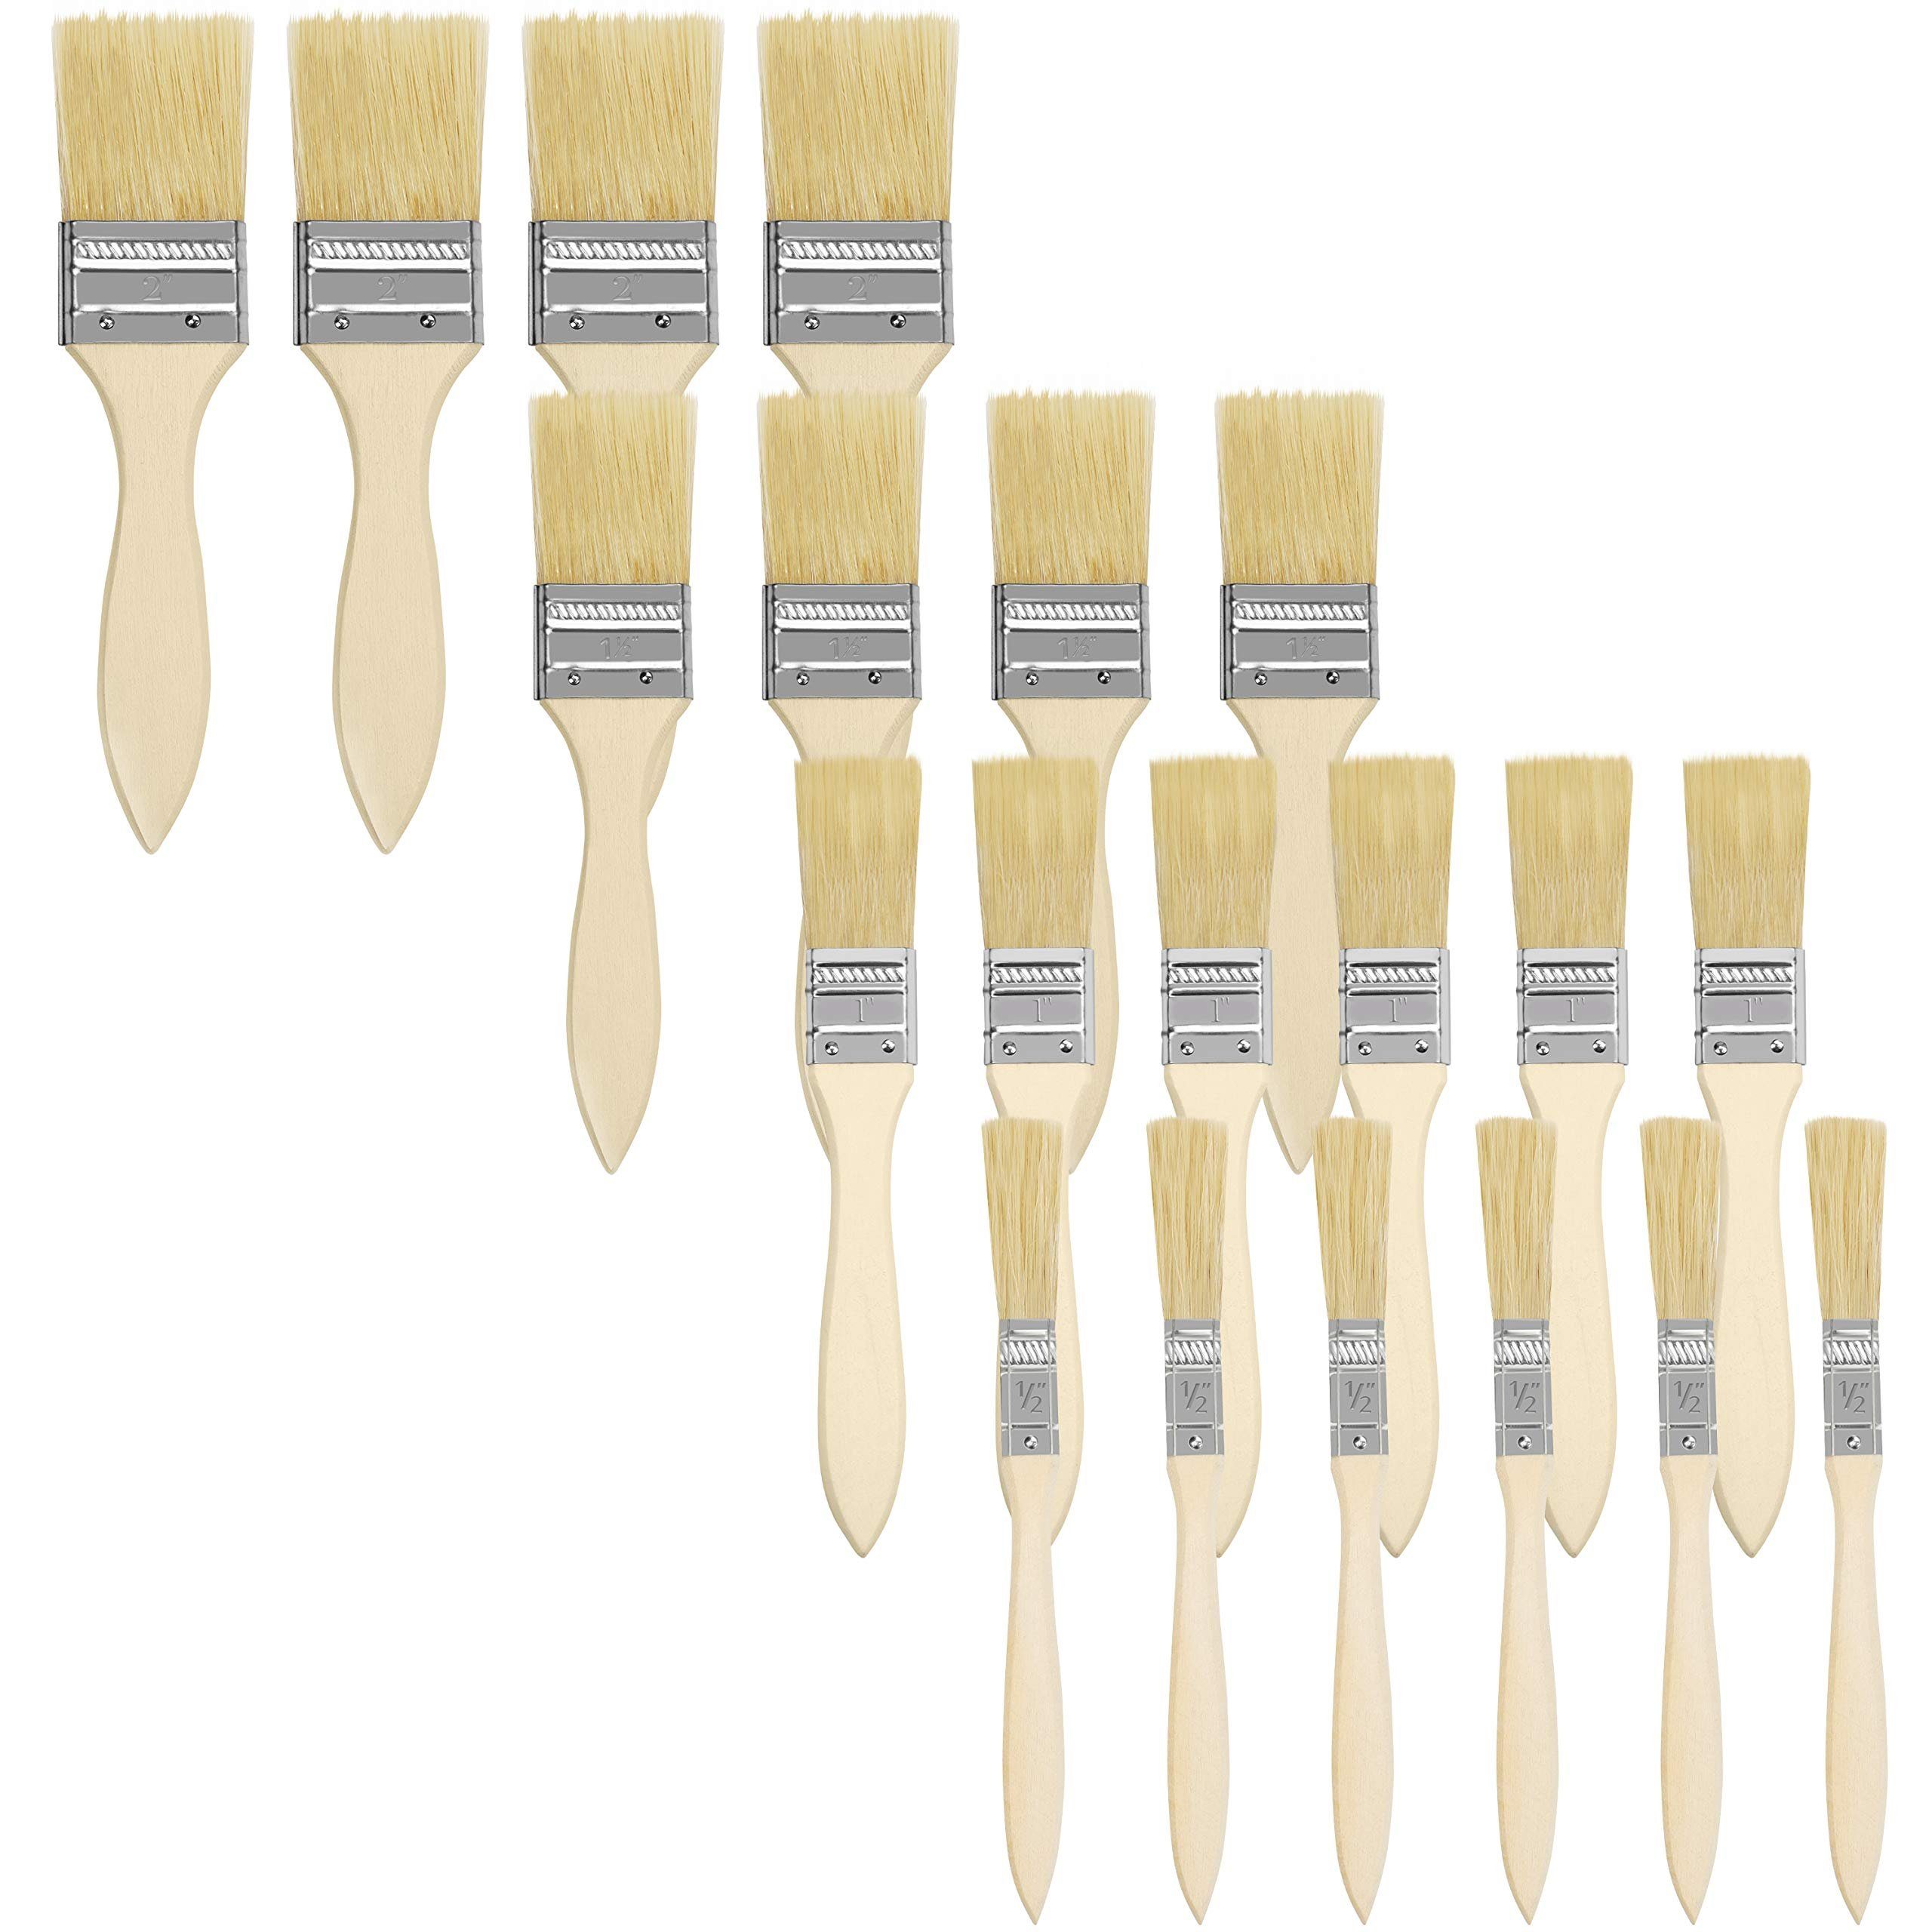 Kurtzy Lackierpinsel Malerpinselset - 20 Stück - Holzpinsel für Farbe, Pinselset für Maler - 20 Stk - Holzpinsel für Farbe